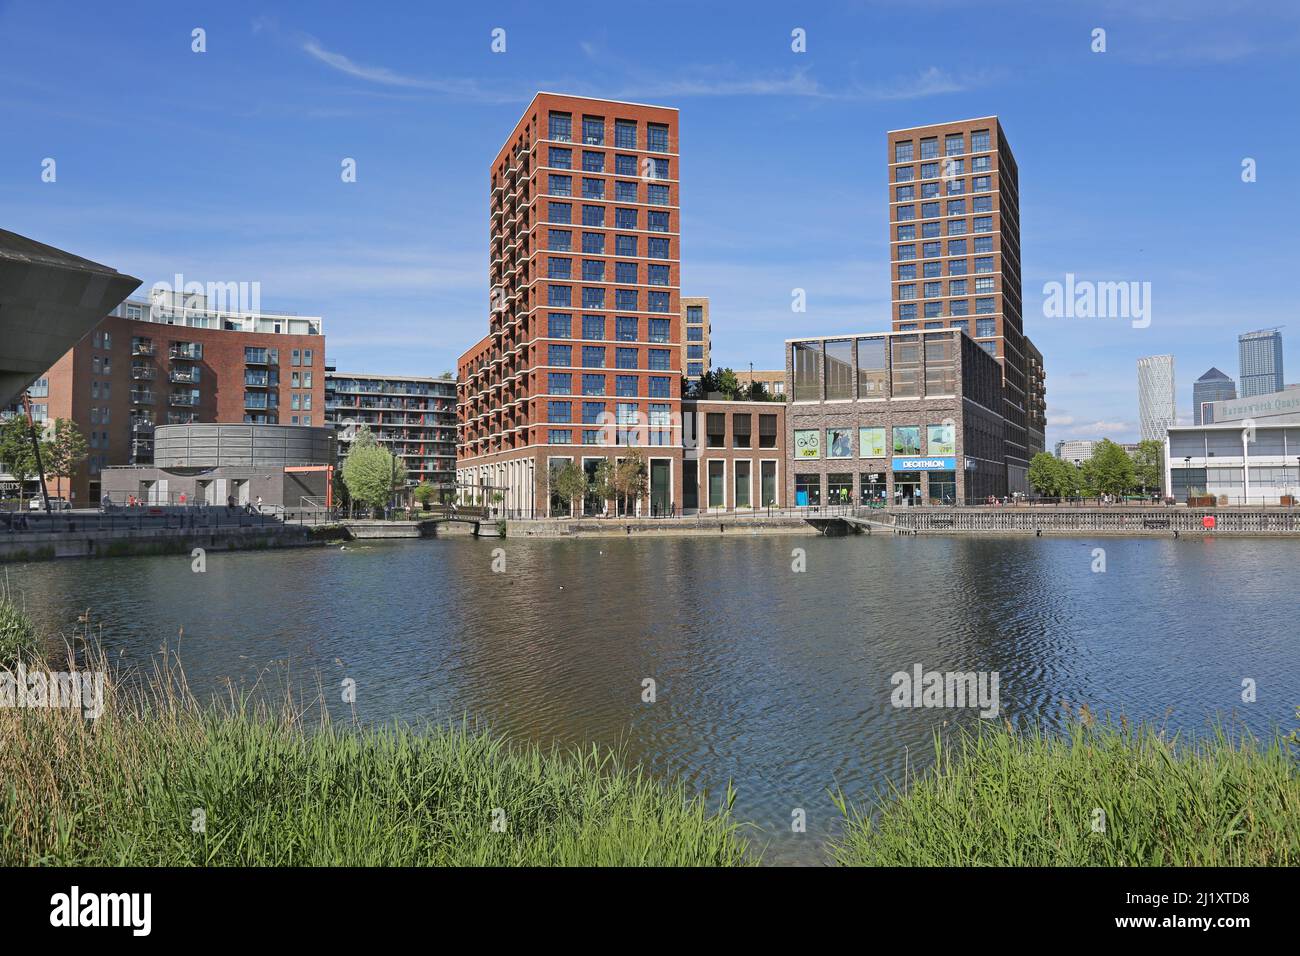 Geschäfte und Apartments im Londoner Canada Water, Teil des neu entwickelten Surrey Docks-Gebiets in der Nähe der Themse. Stockfoto